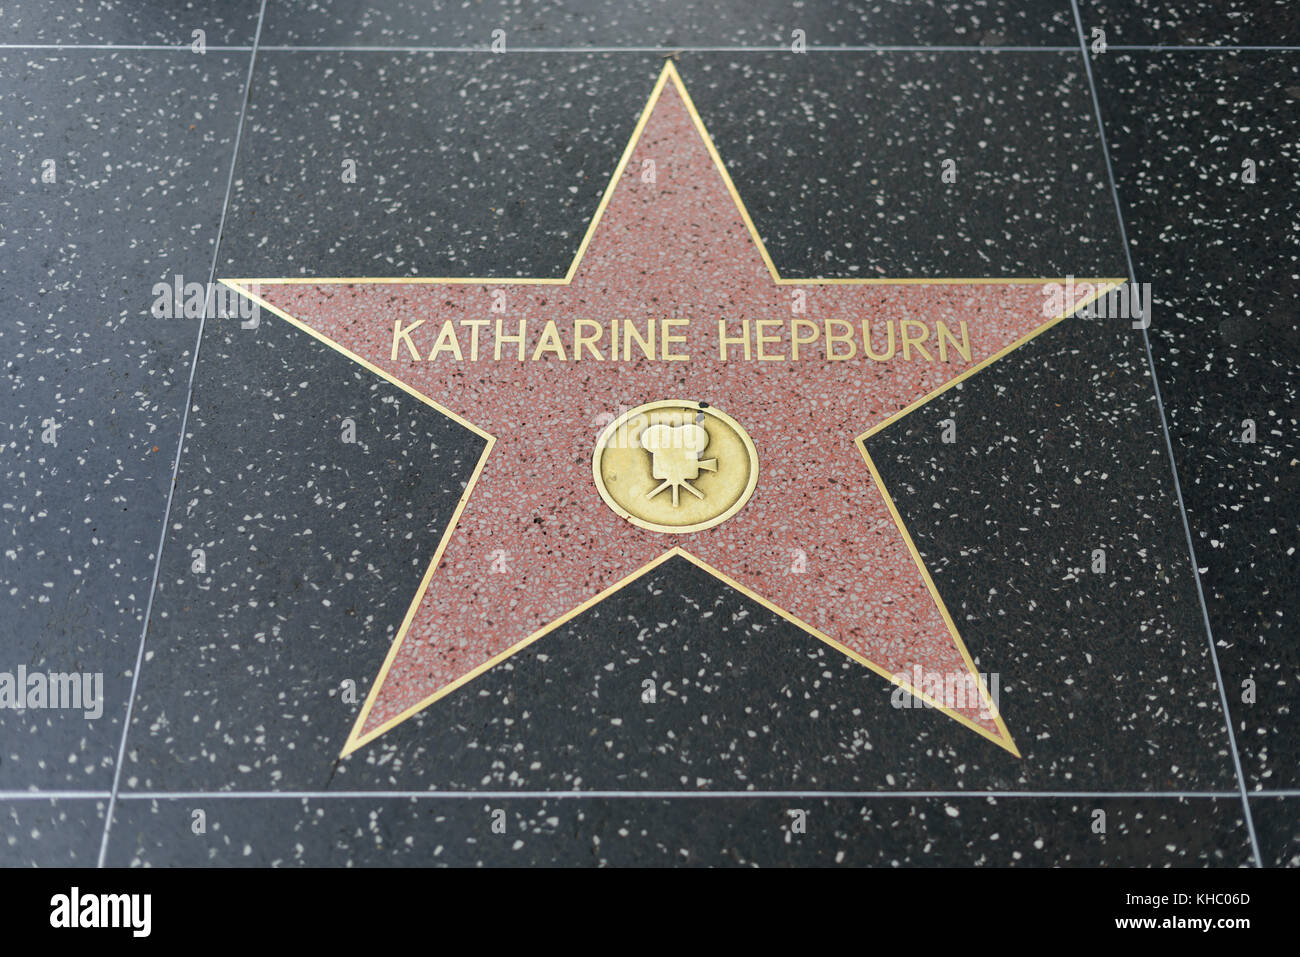 HOLLYWOOD, CA - 06 de diciembre: Katherine Hepburn estrella en el Paseo de la Fama de Hollywood en Hollywood, California, el 6 de diciembre de 2016. Foto de stock